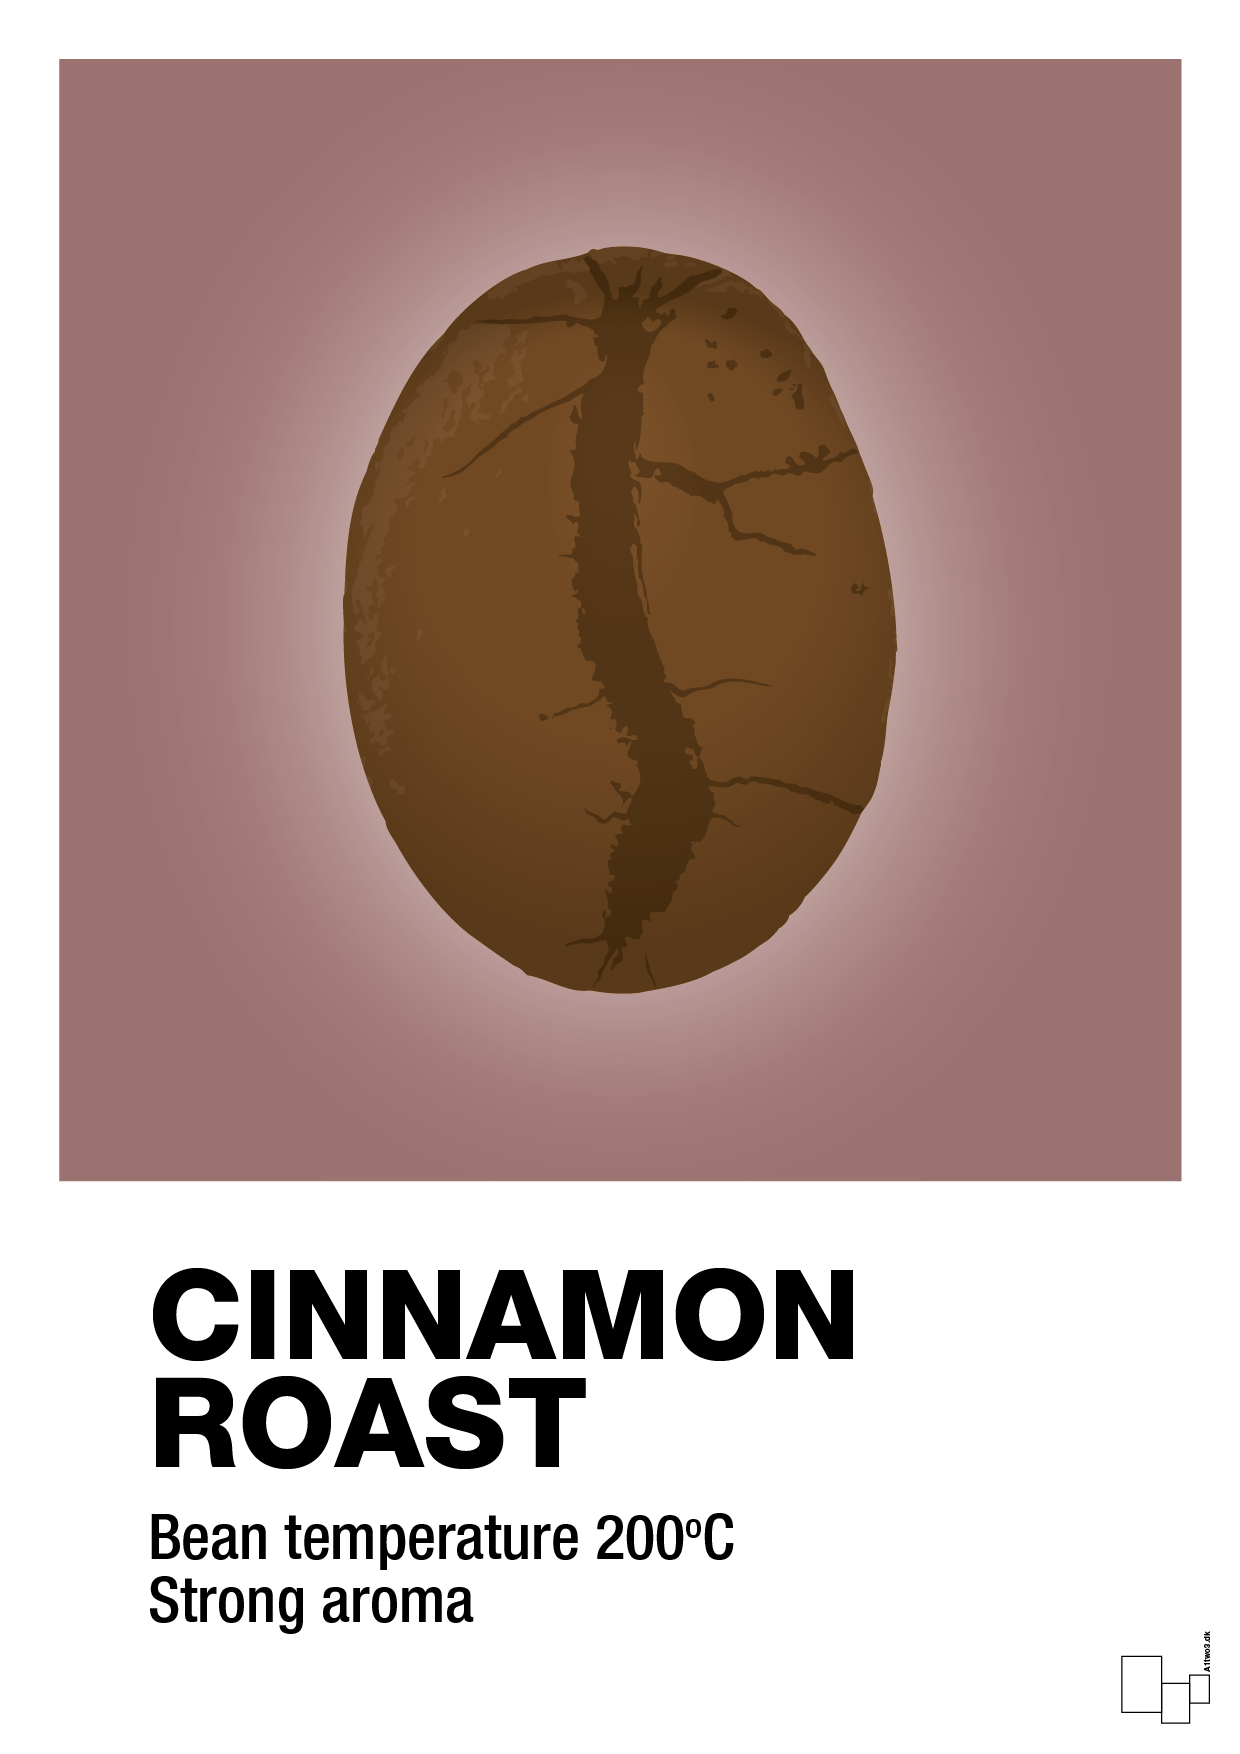 cinnamom roast - Plakat med Mad & Drikke i Plum